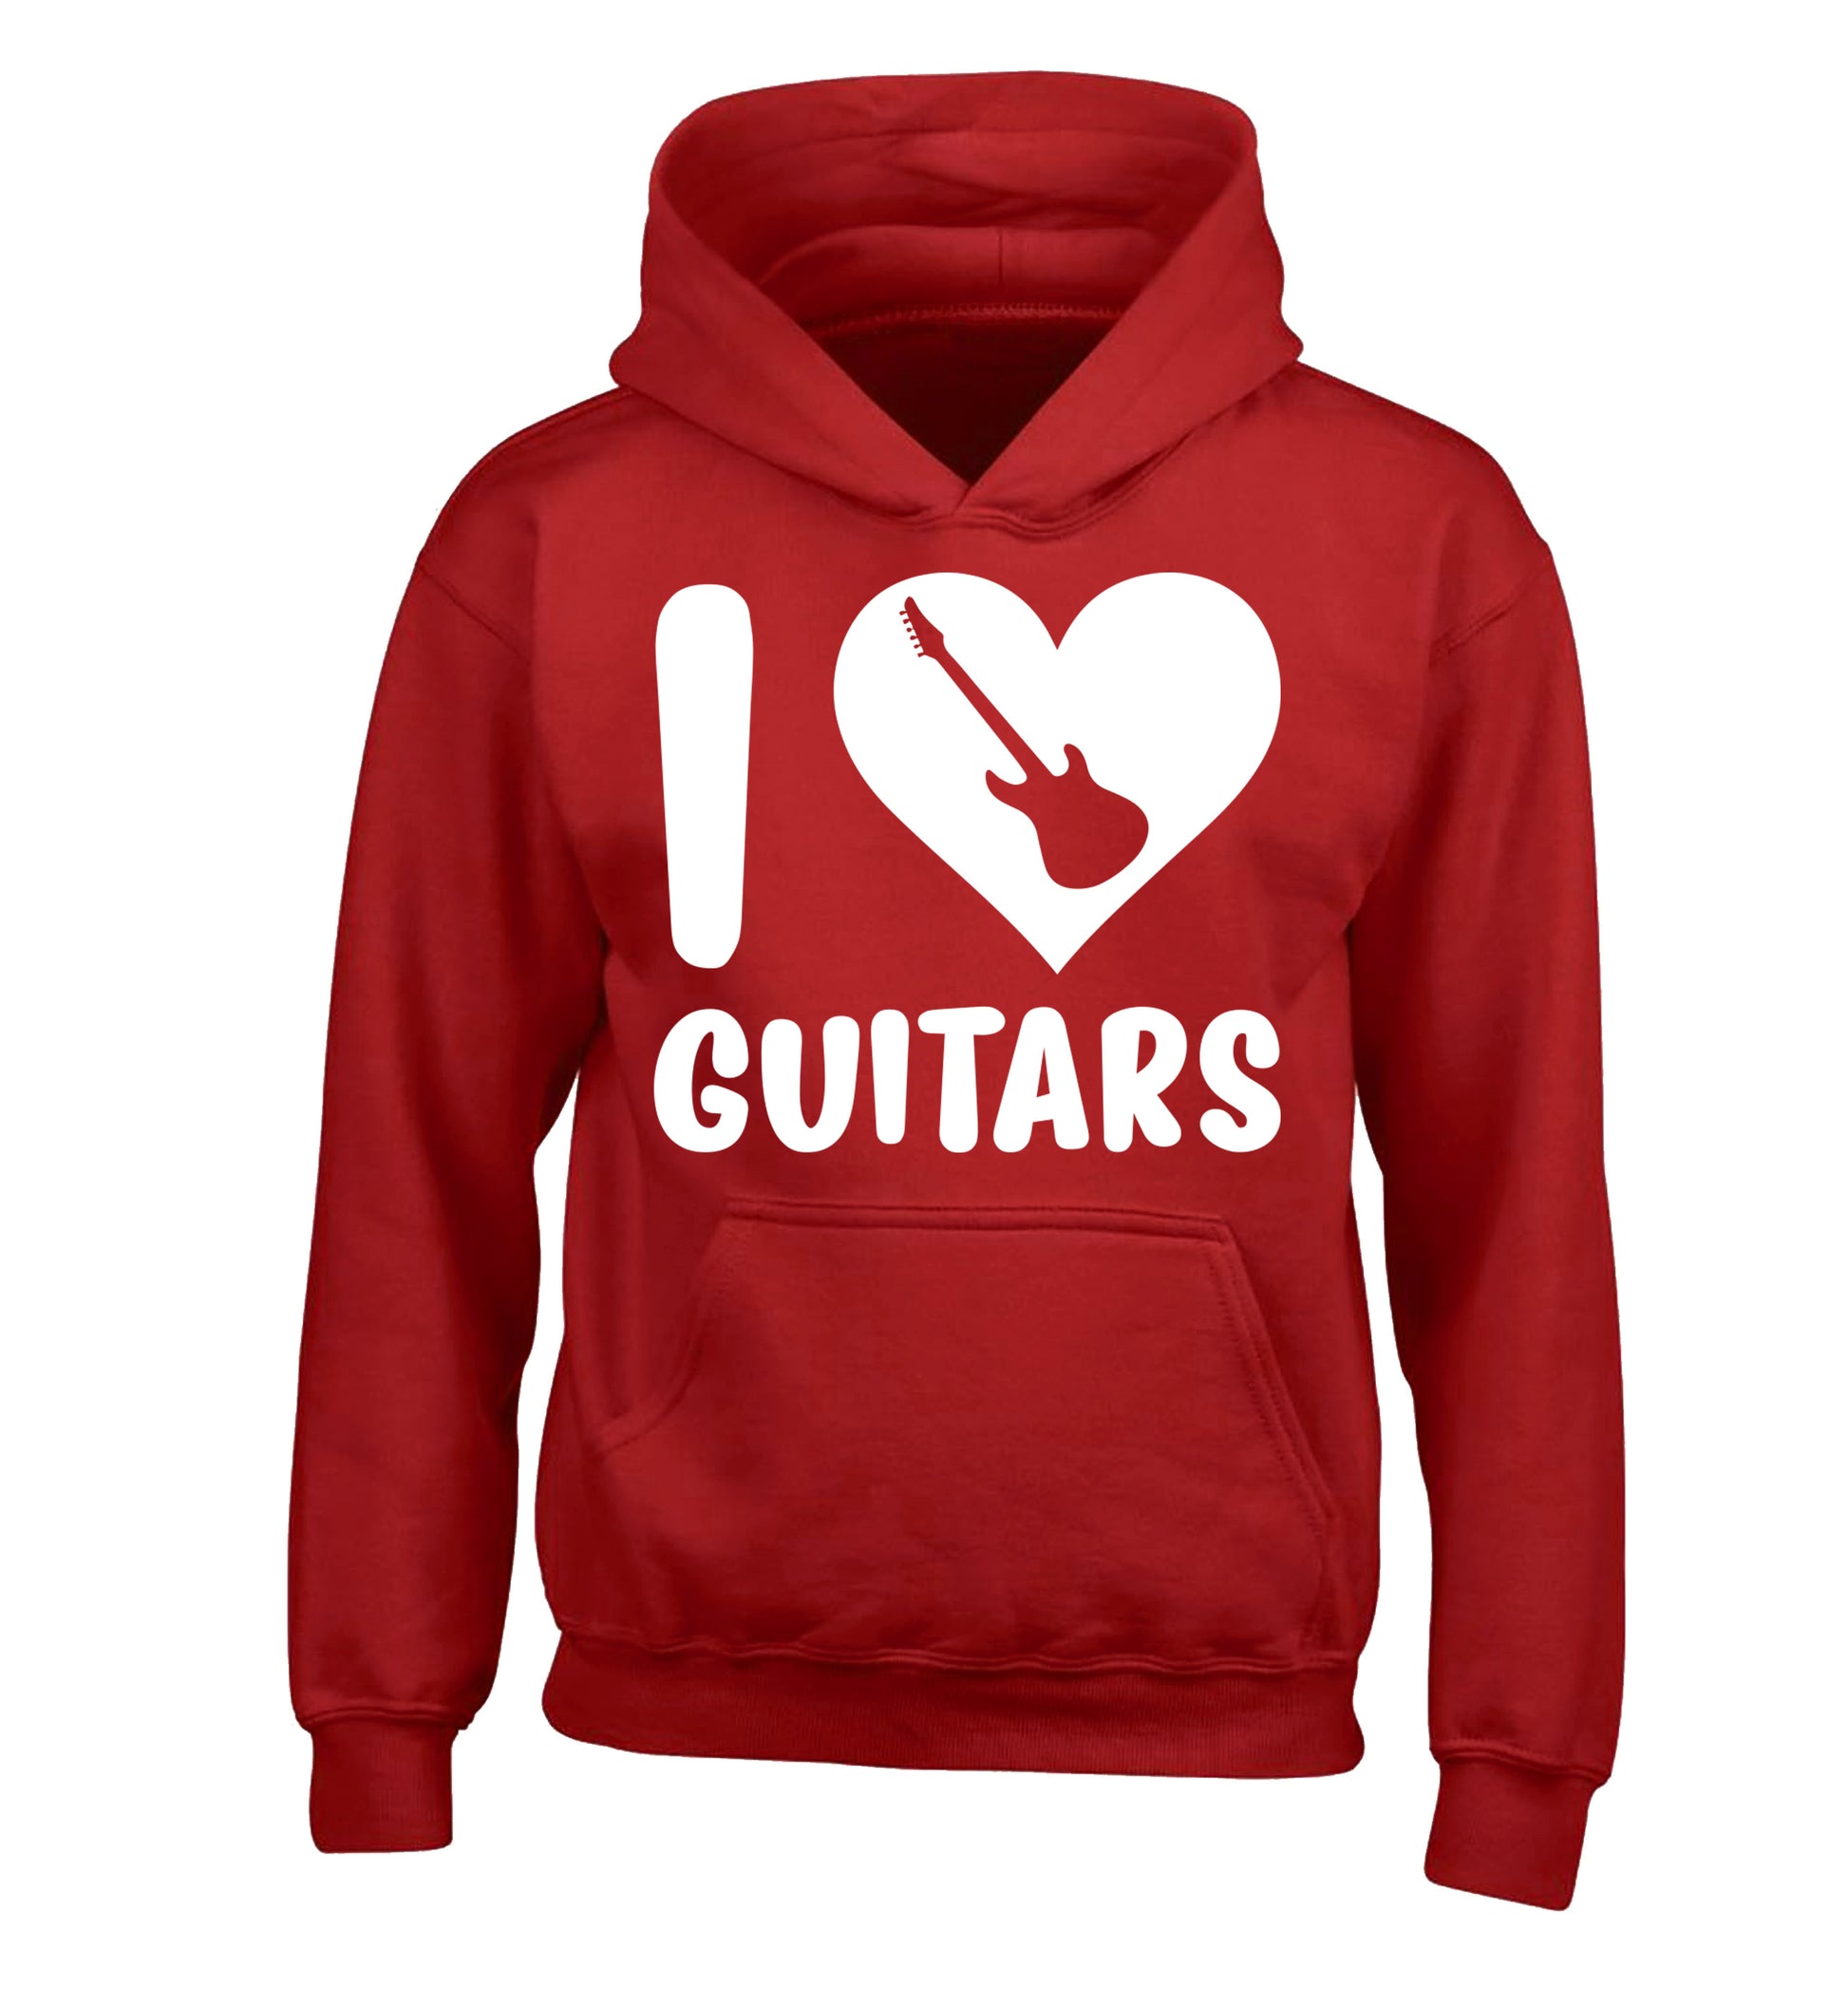 I love guitars children's red hoodie 12-14 Years